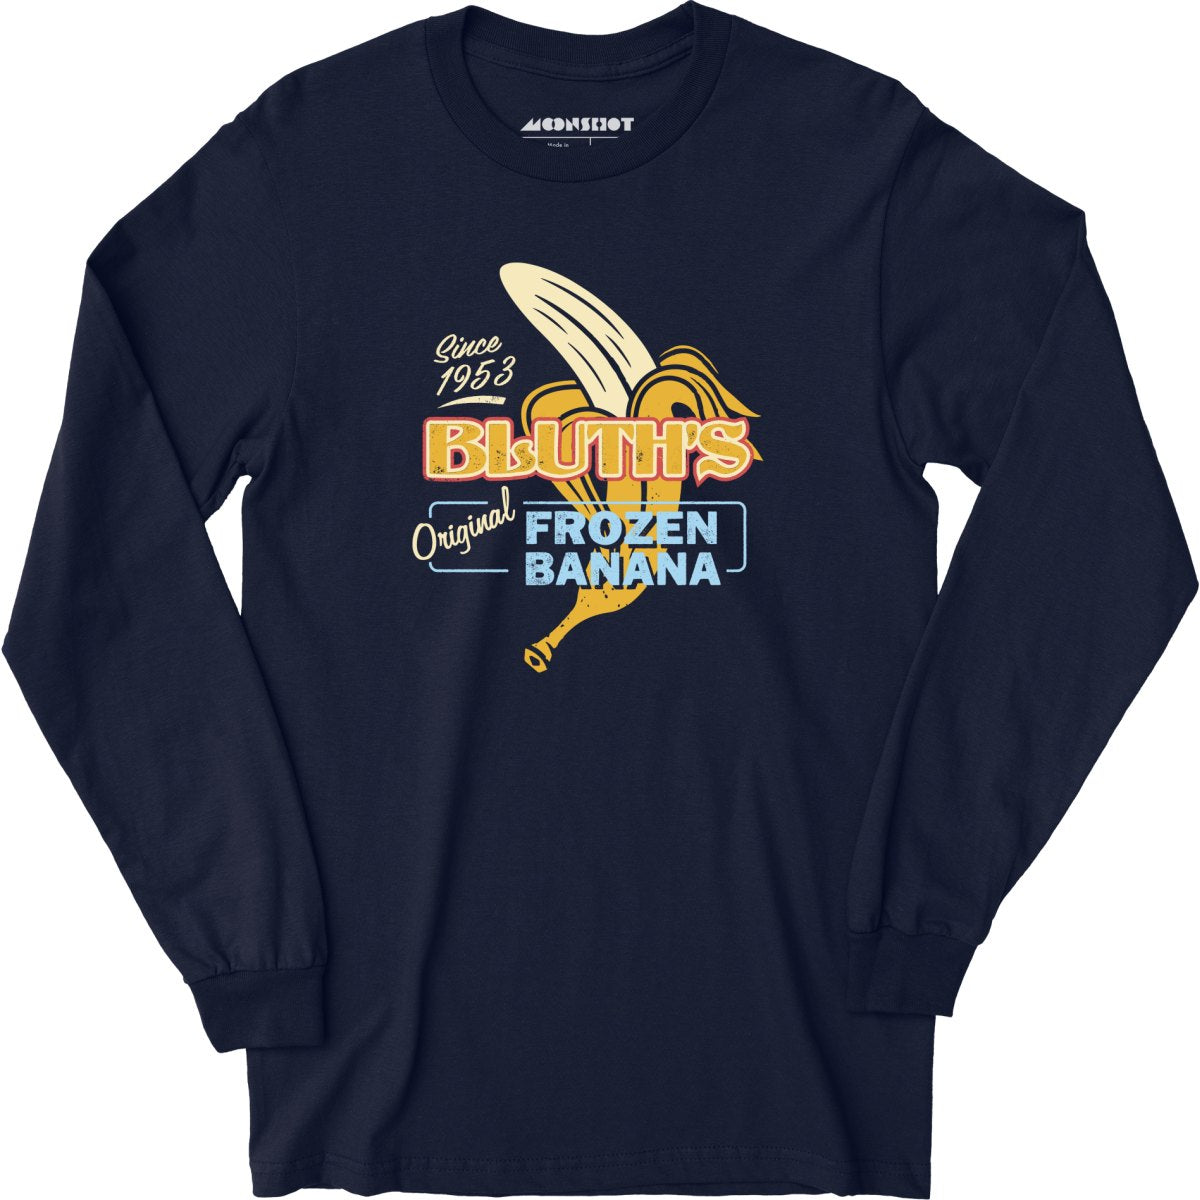 Bluth's Original Frozen Banana - Long Sleeve T-Shirt